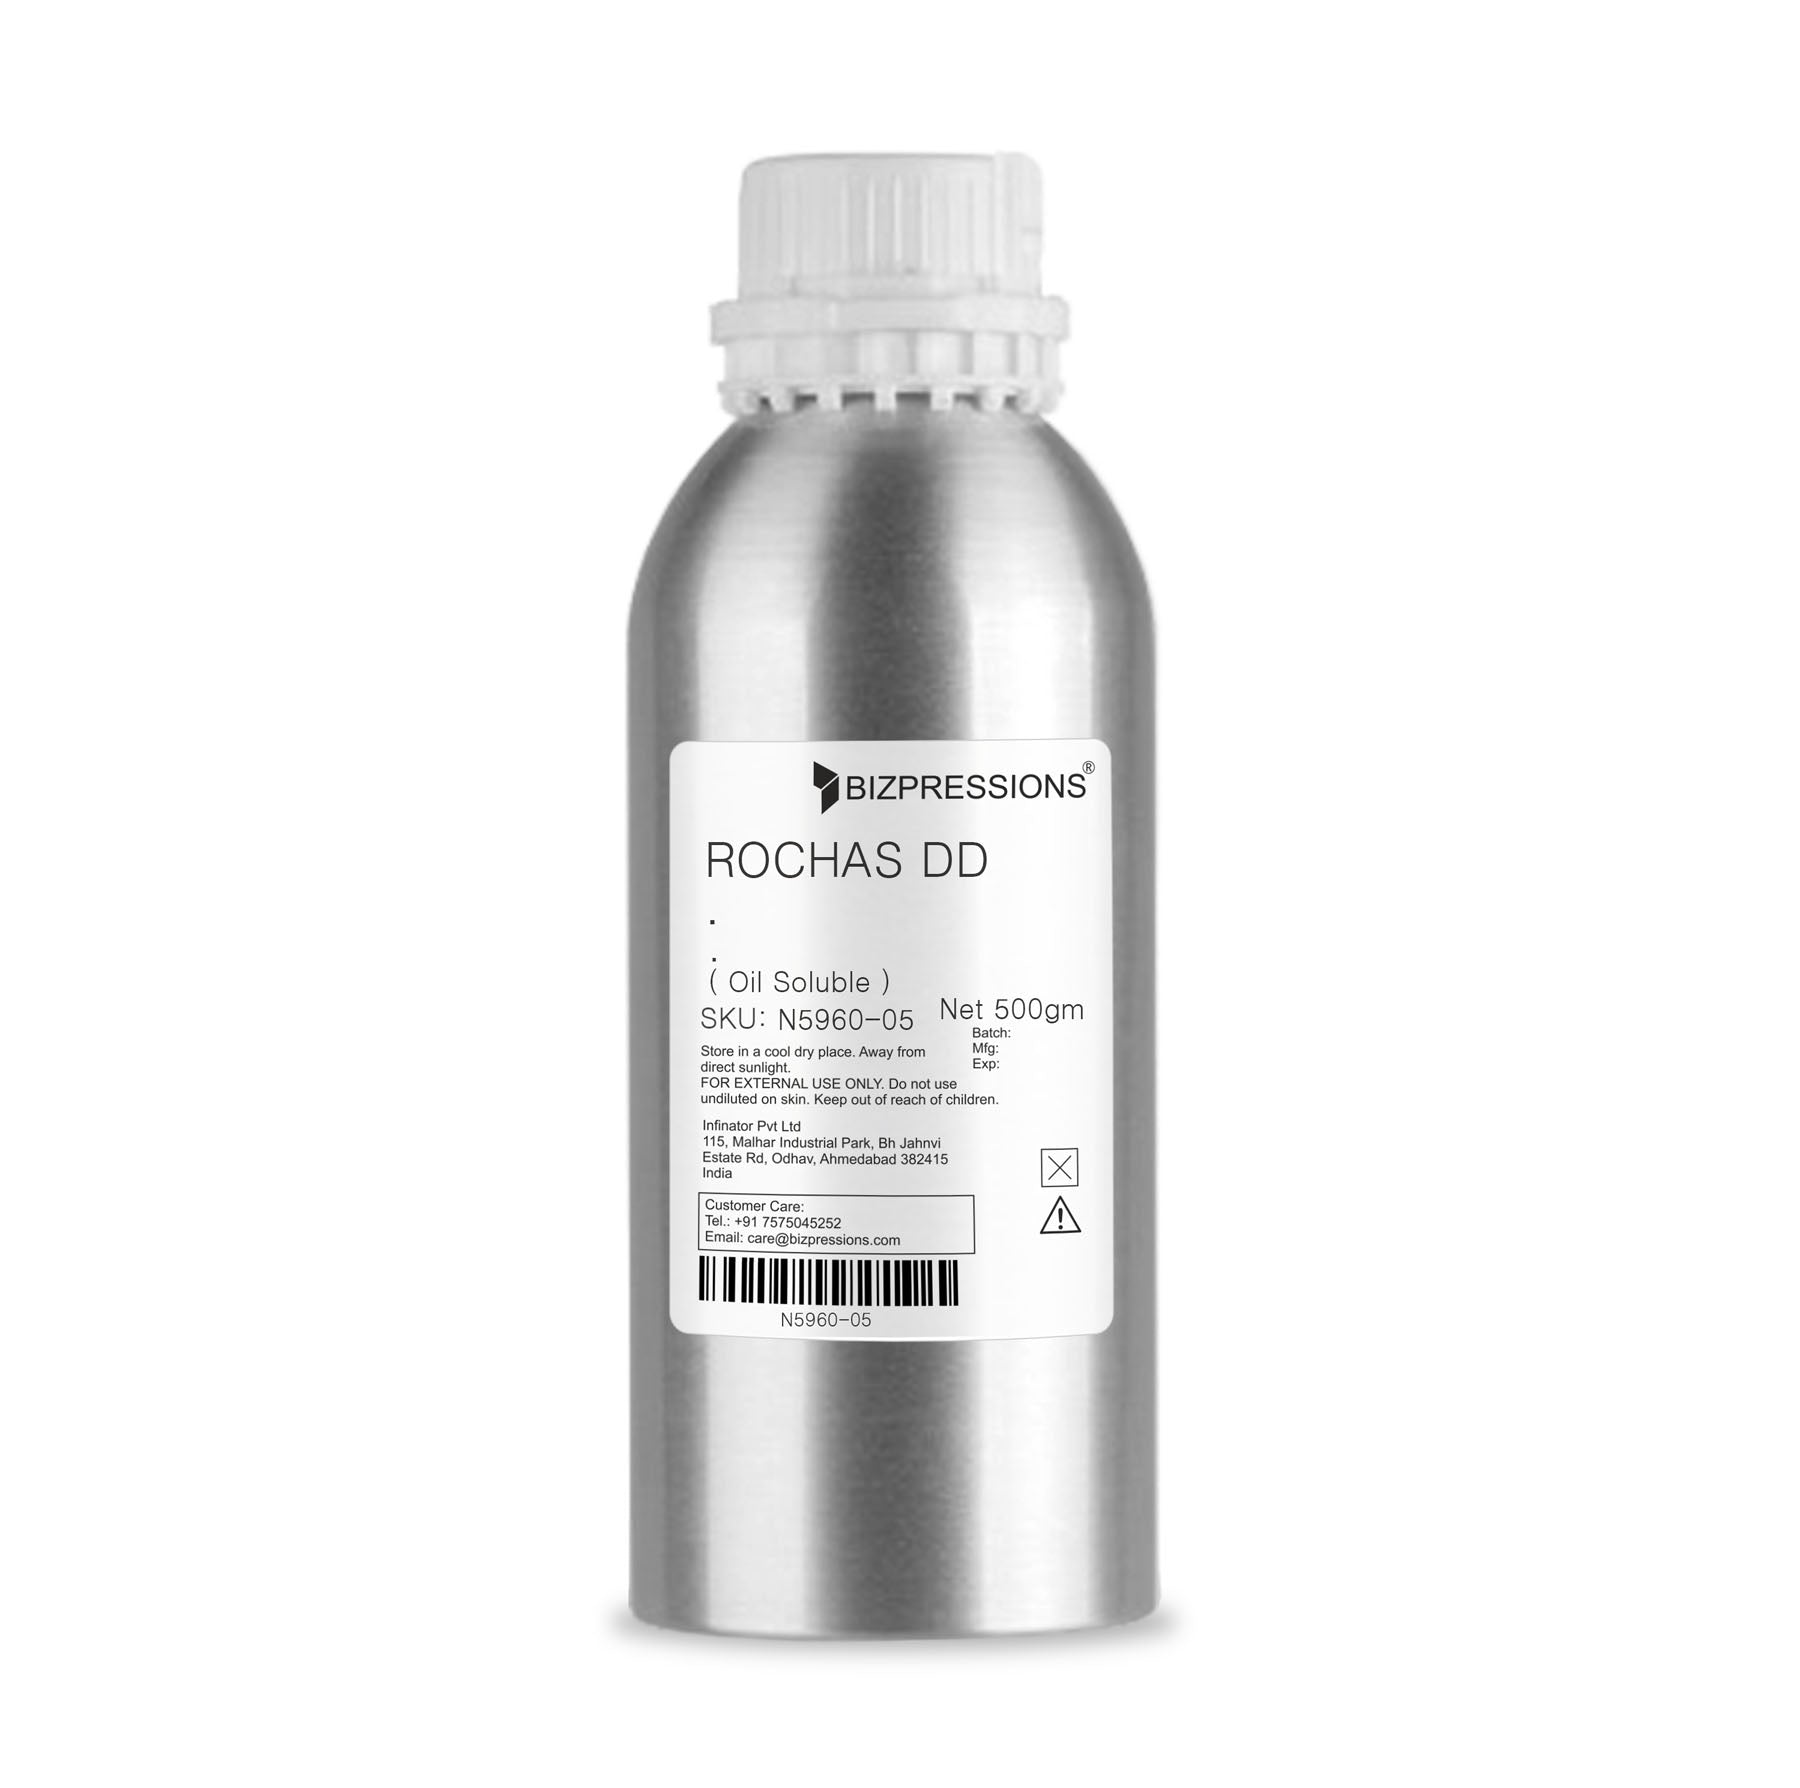 ROCHAS DD - Fragrance ( Oil Soluble ) - 500 gm